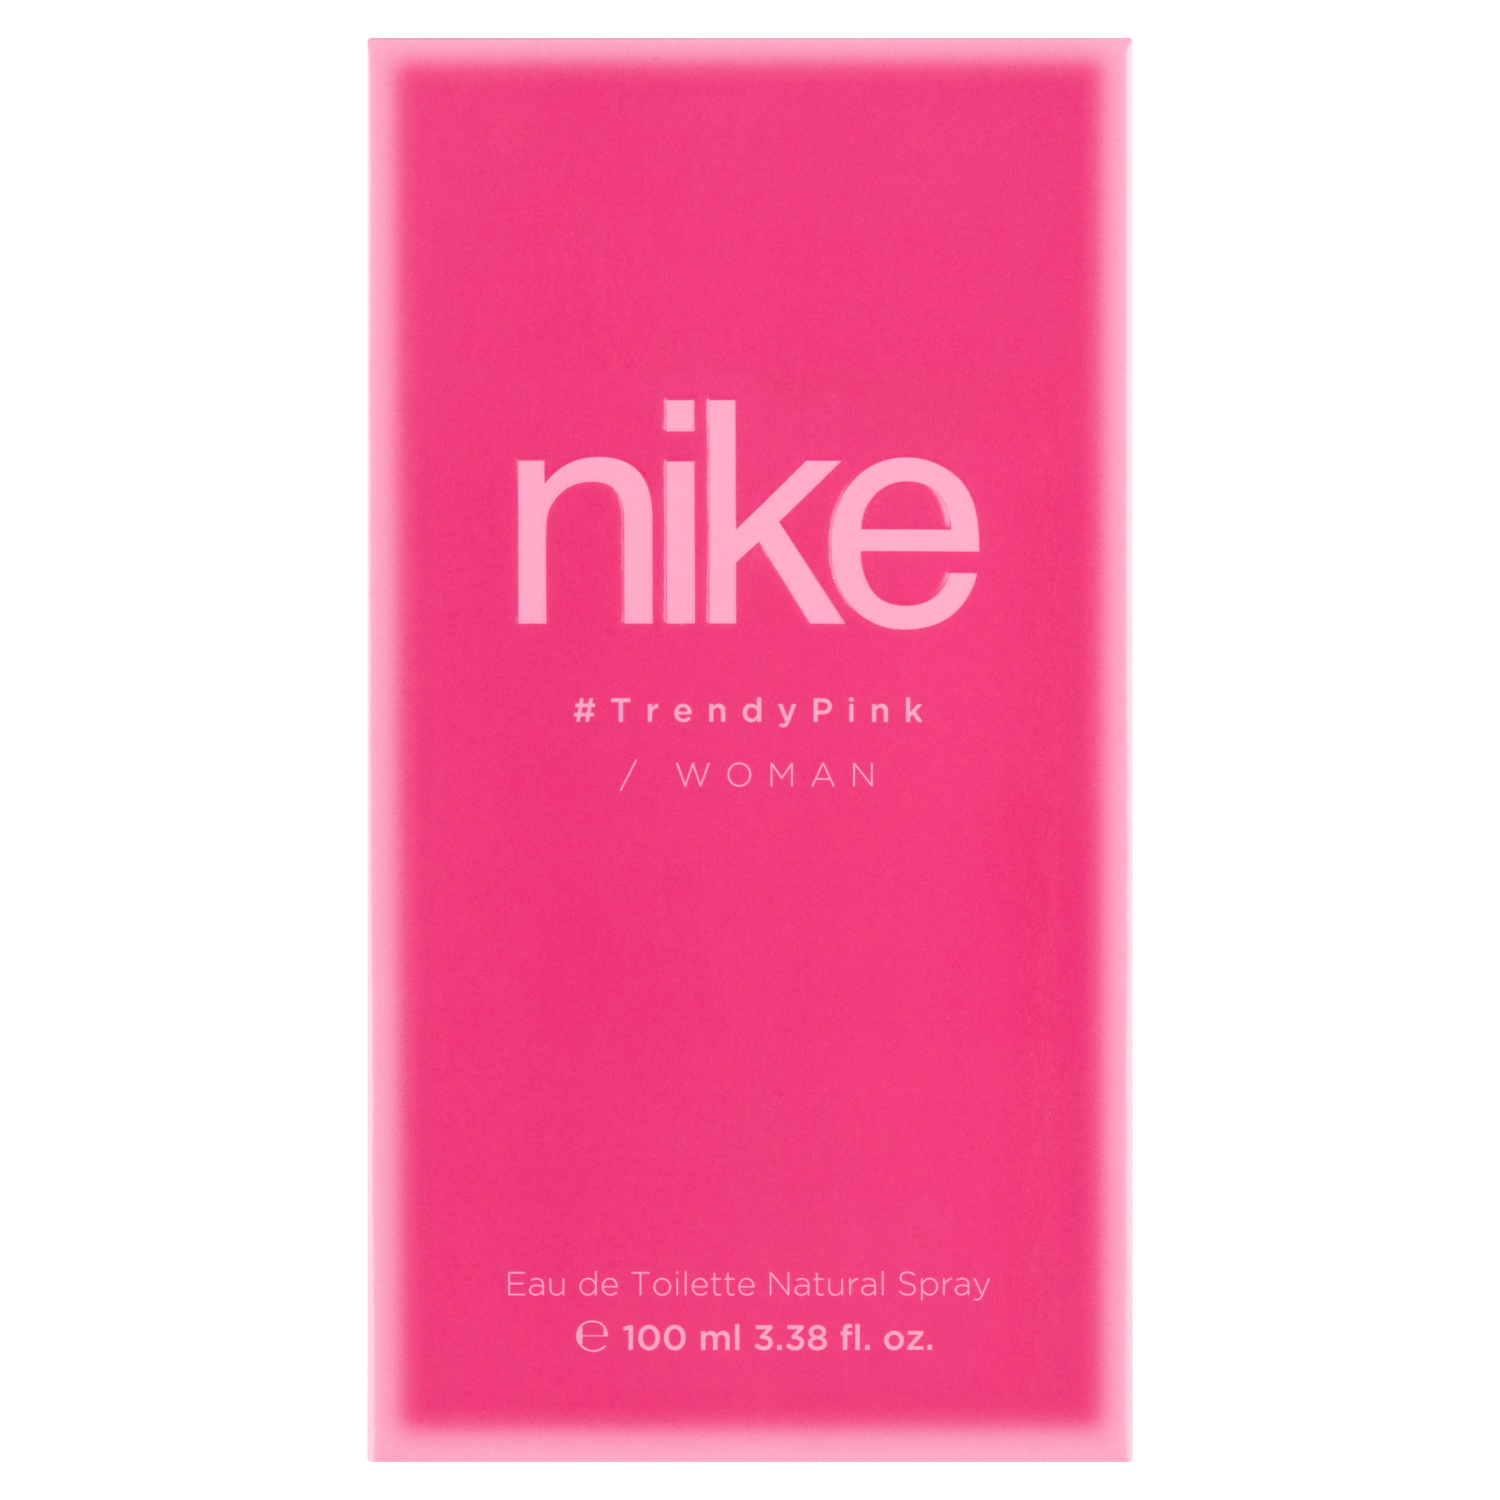 Натуральная женская туалетная вода Nike Trendy Pink, 100 мл jeans woman туалетная вода 75мл